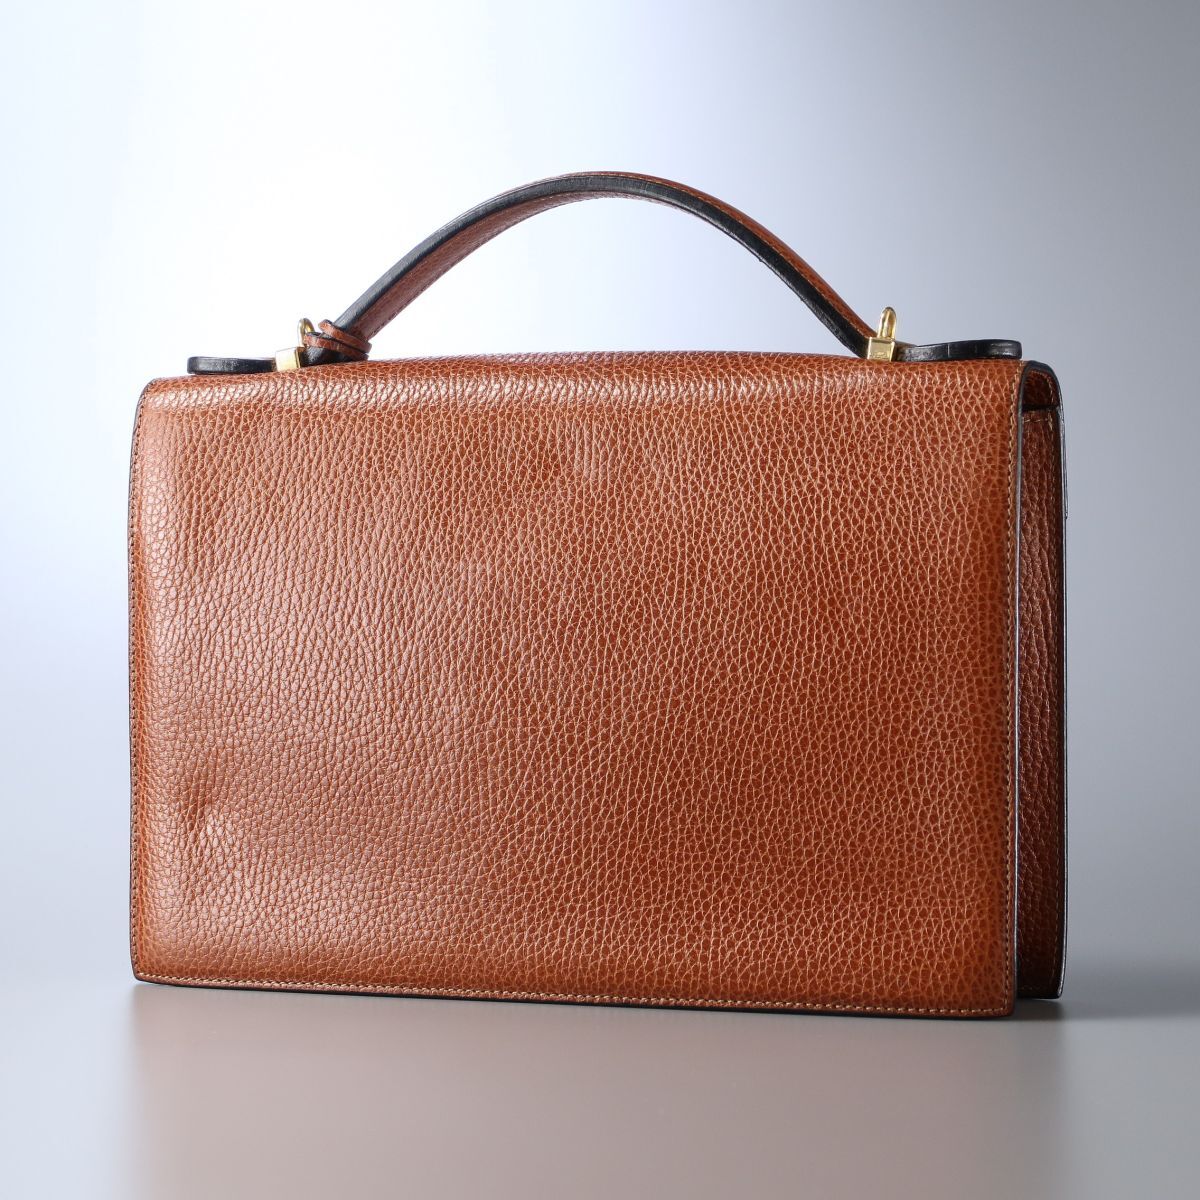 MG2747// Italy made *a test -ni/a.testoni* leather second bag / handbag / bag / tea / Brown 